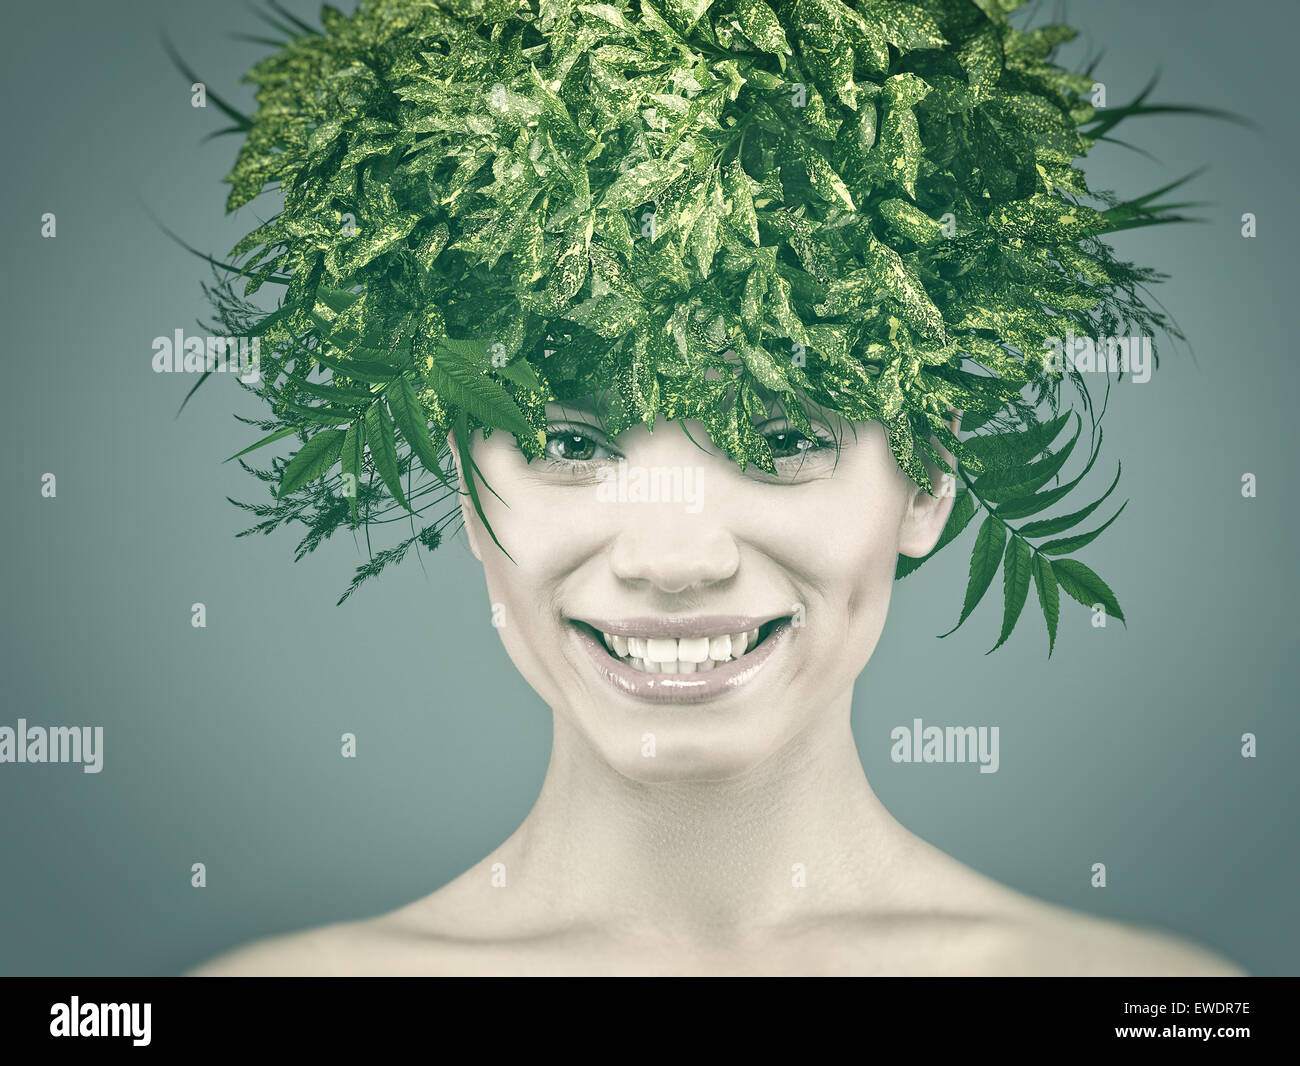 Lustige Frauenporträt mit Eco Hair style Stockfoto